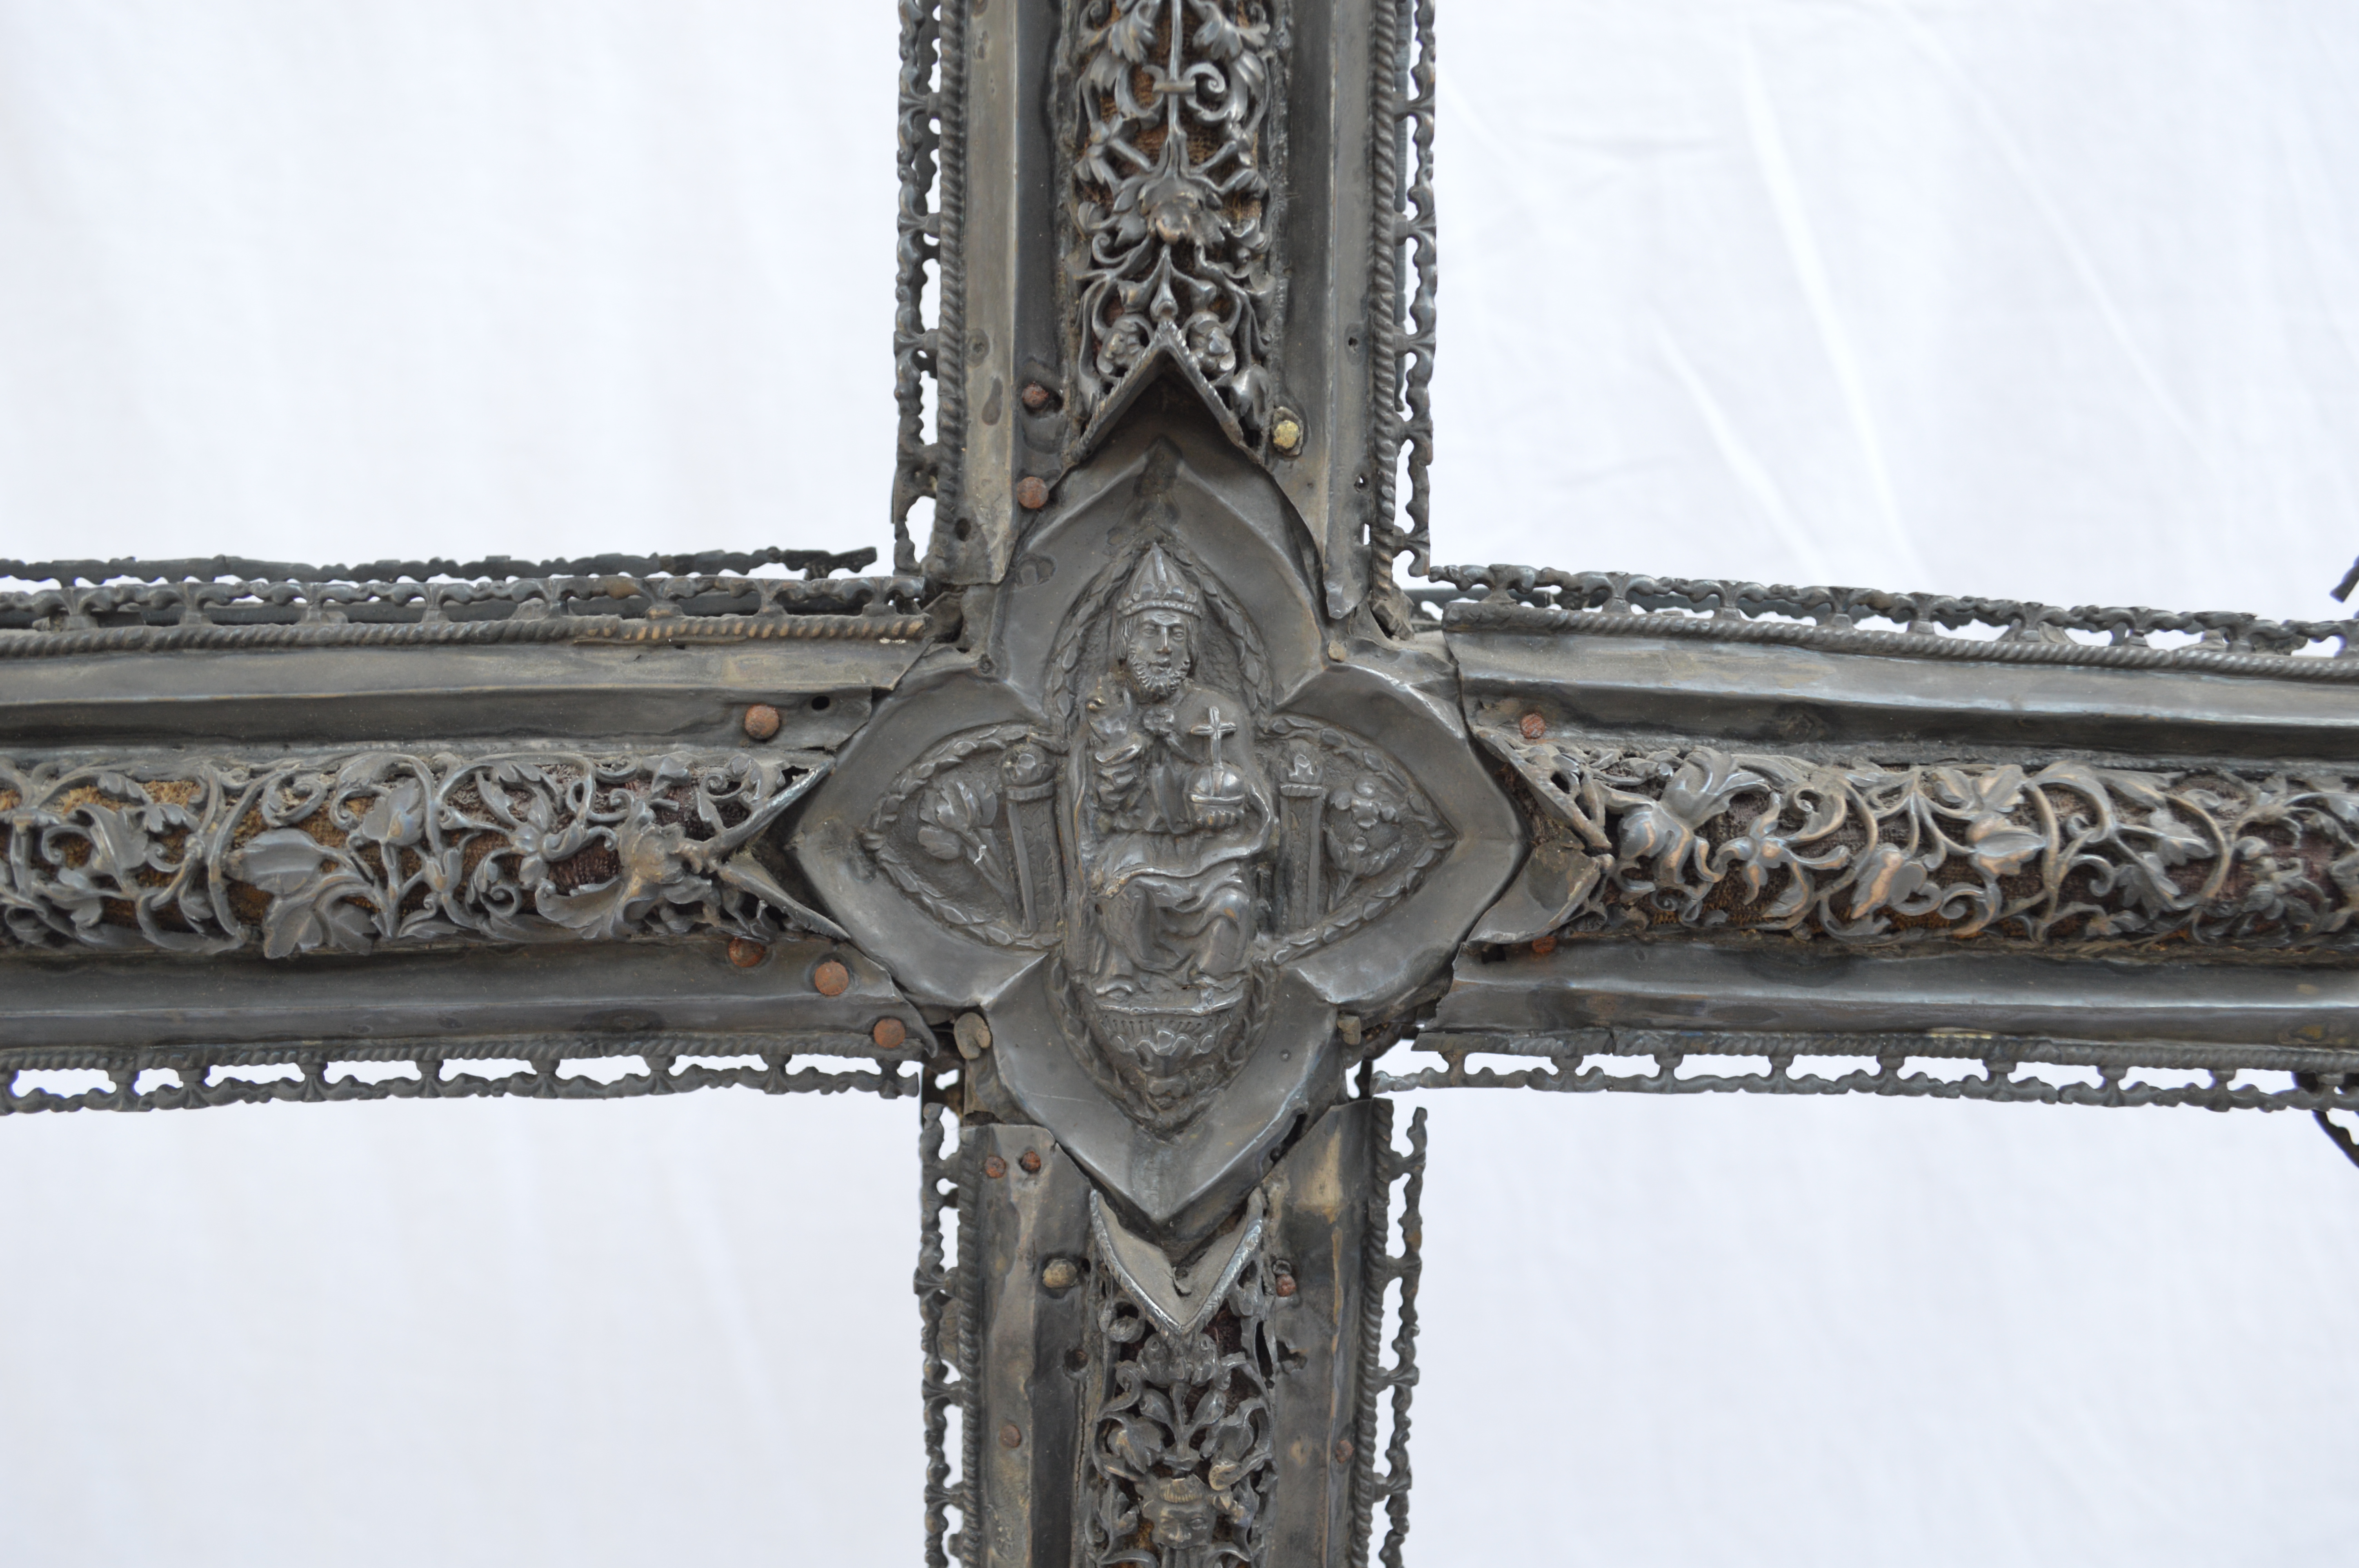 El CEART-UM (Centro de Expertización de Arte de la Universidad de Murcia) estudia, indentifica y certifica una cruz procesional de plata del siglo XVI